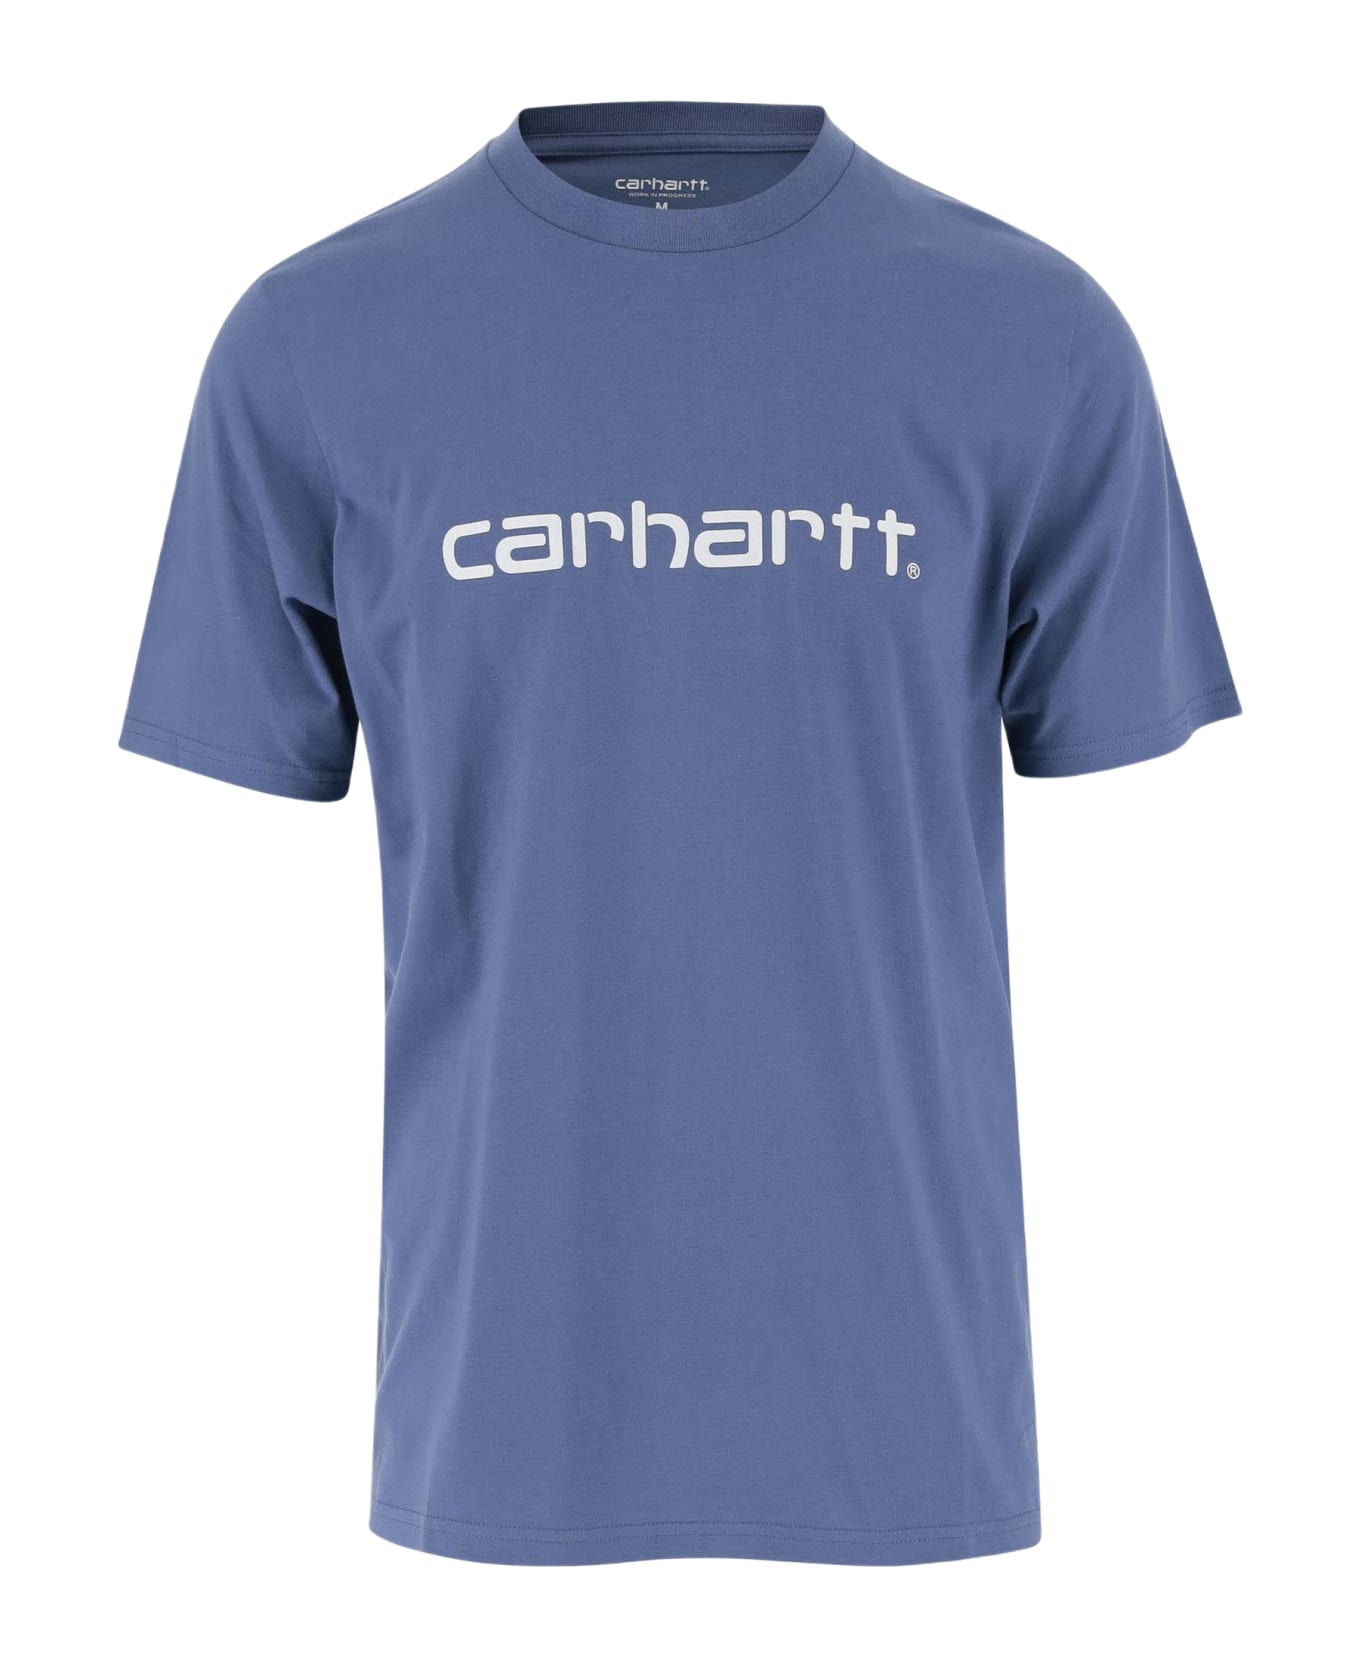 Carhartt Cotton T-shirt With Logo - Blue